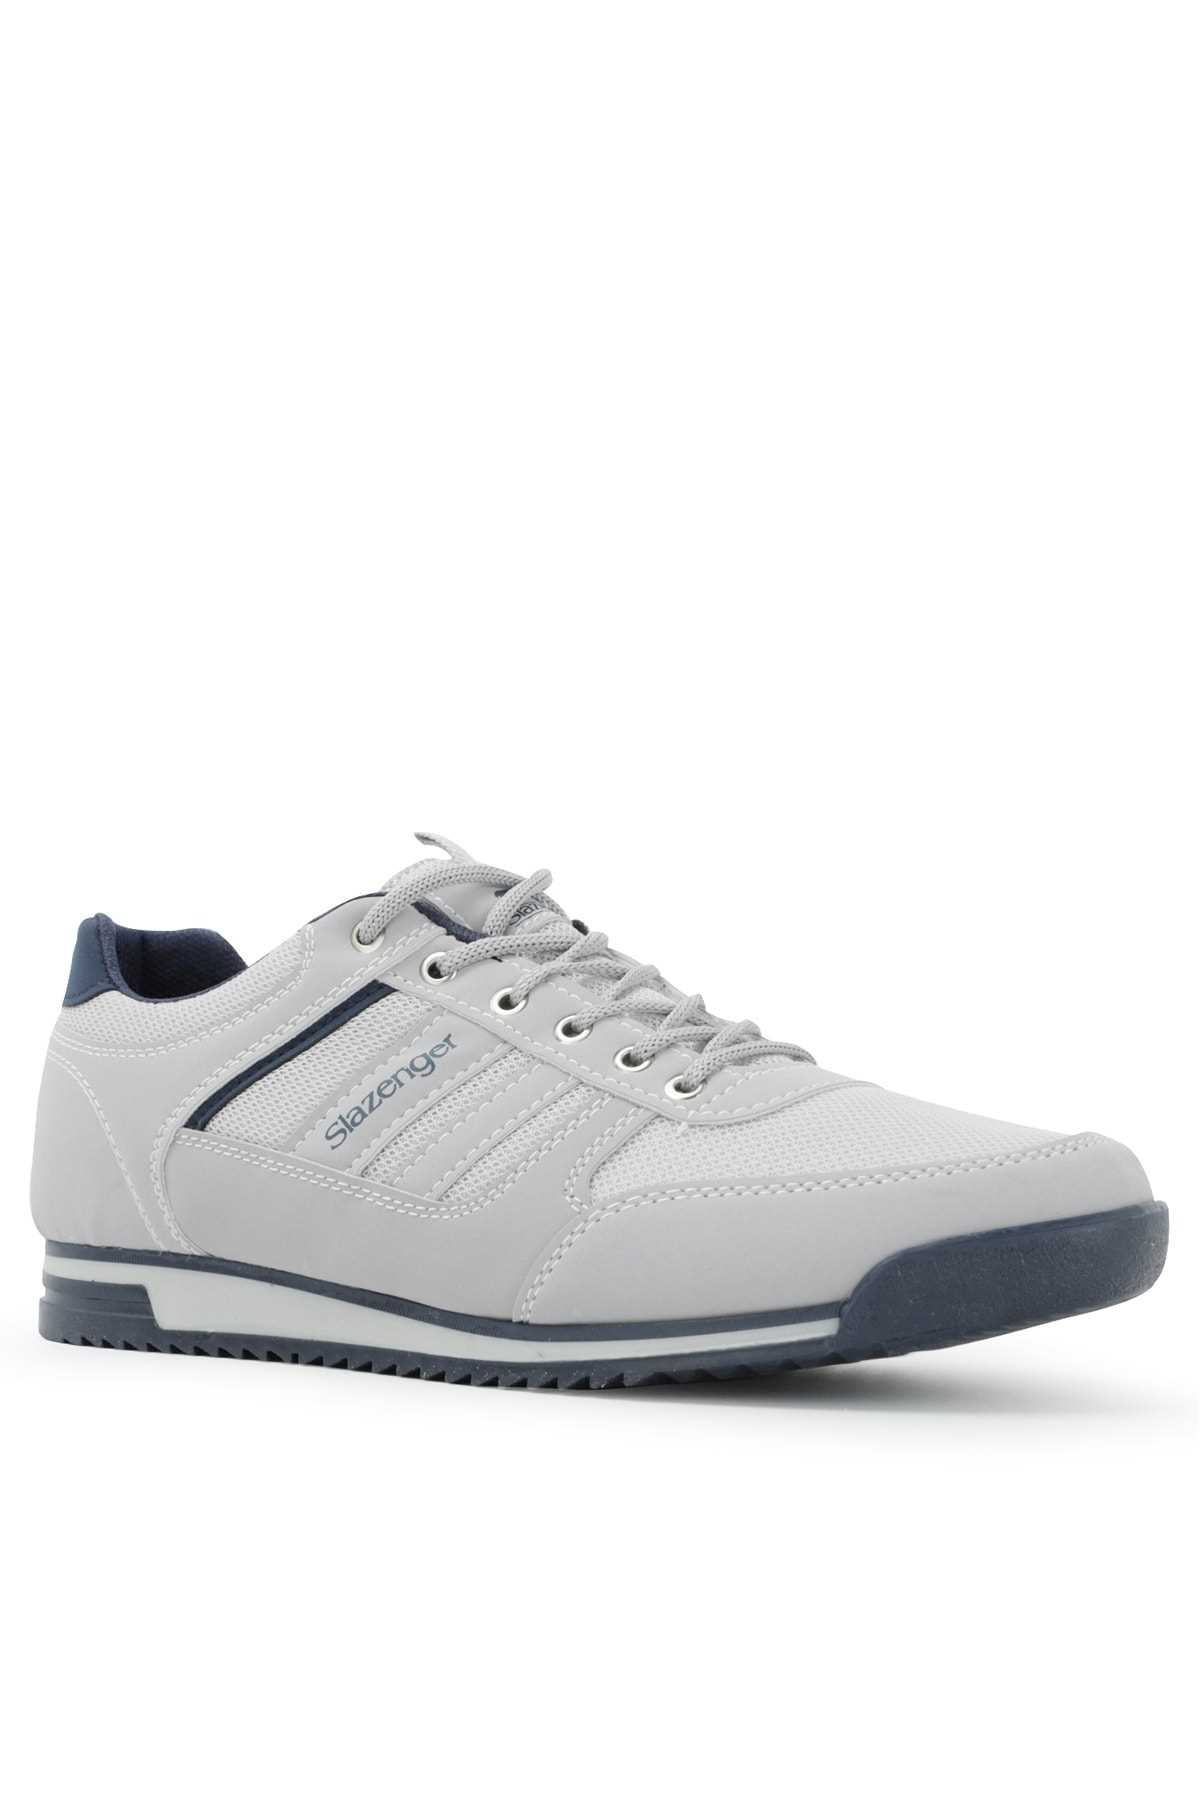 سفارش انلاین کفش مخصوص پیاده روی مردانه ساده زیبا اسلازنگر رنگ نقره ای ty79873581